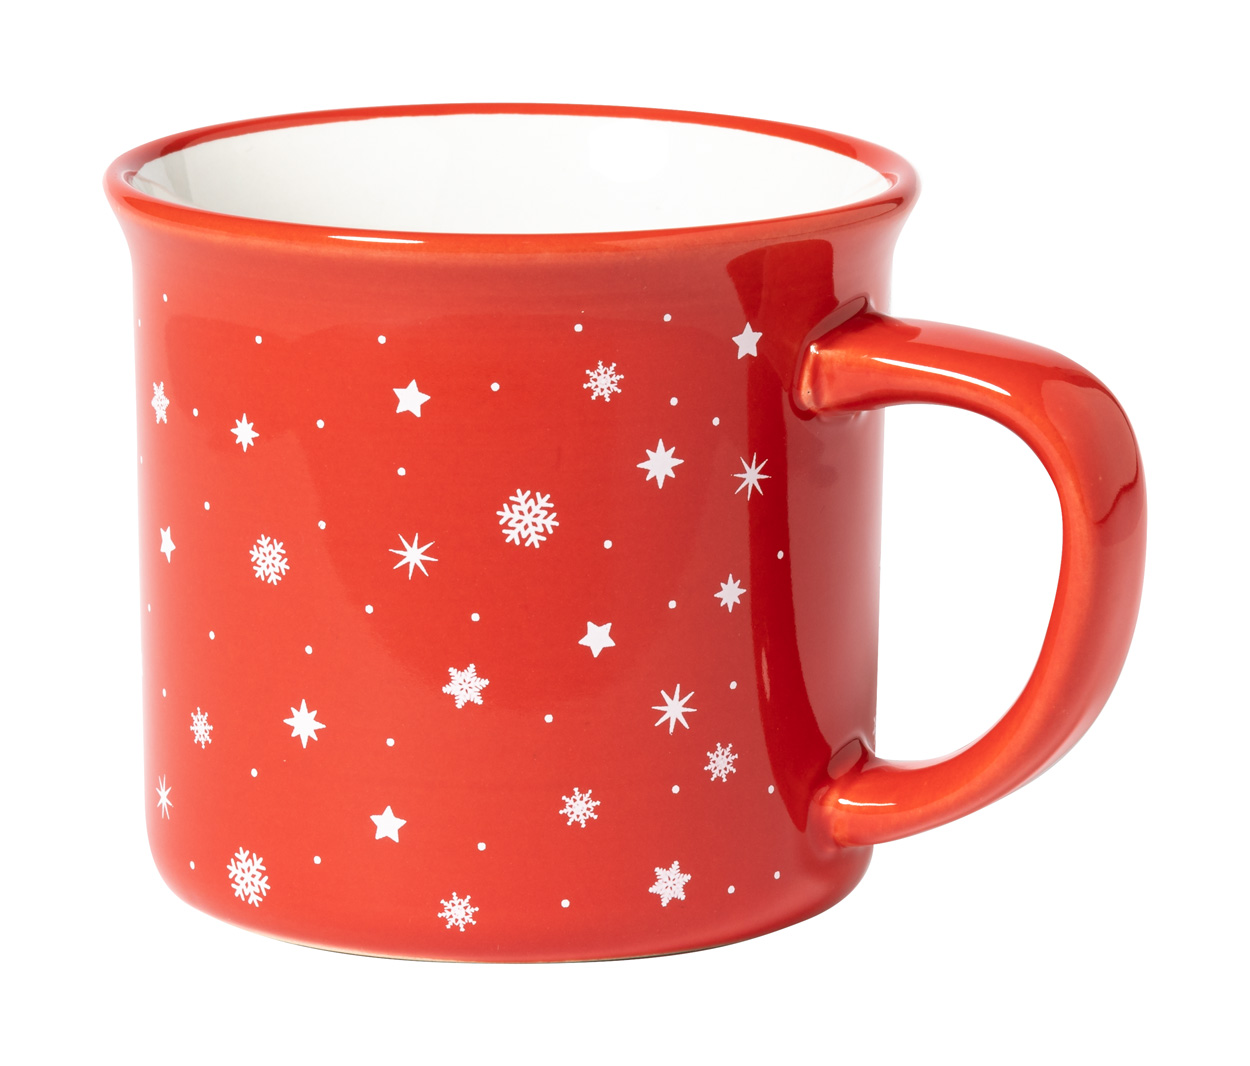 Verdux retro Christmas mug - red